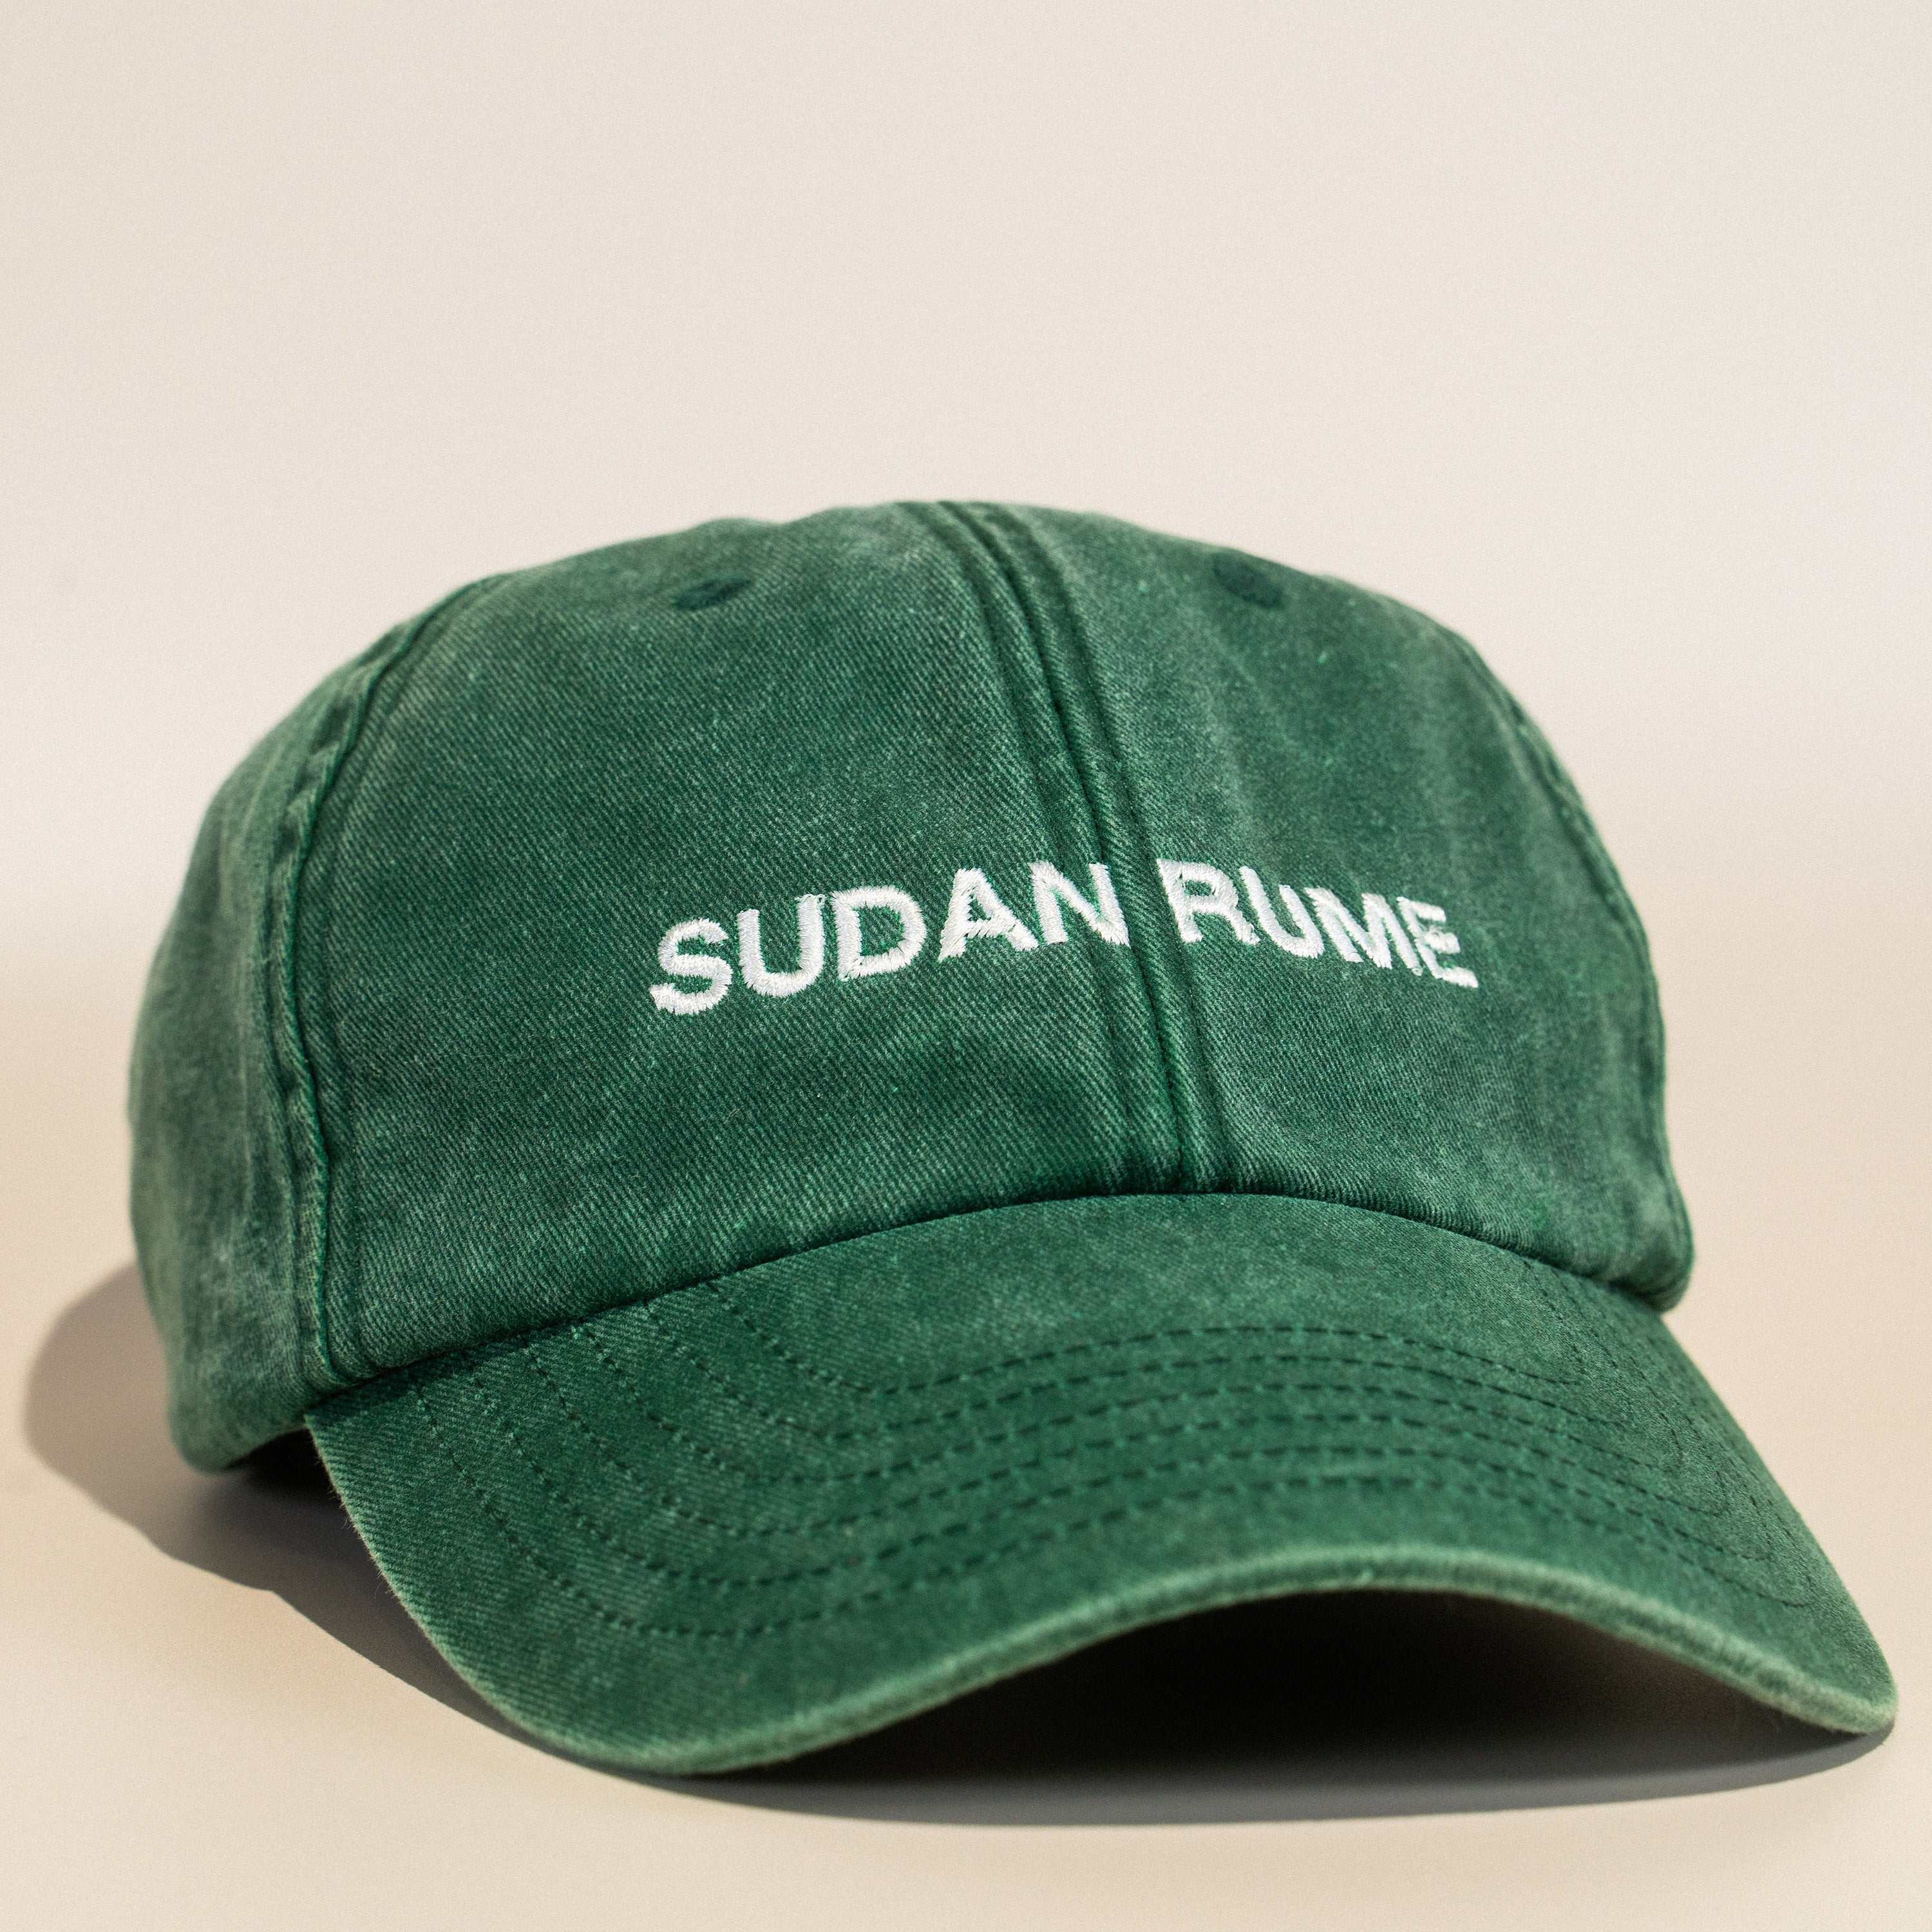 Sudan Rume (Washed Green) Varietal 6 Panel Cap